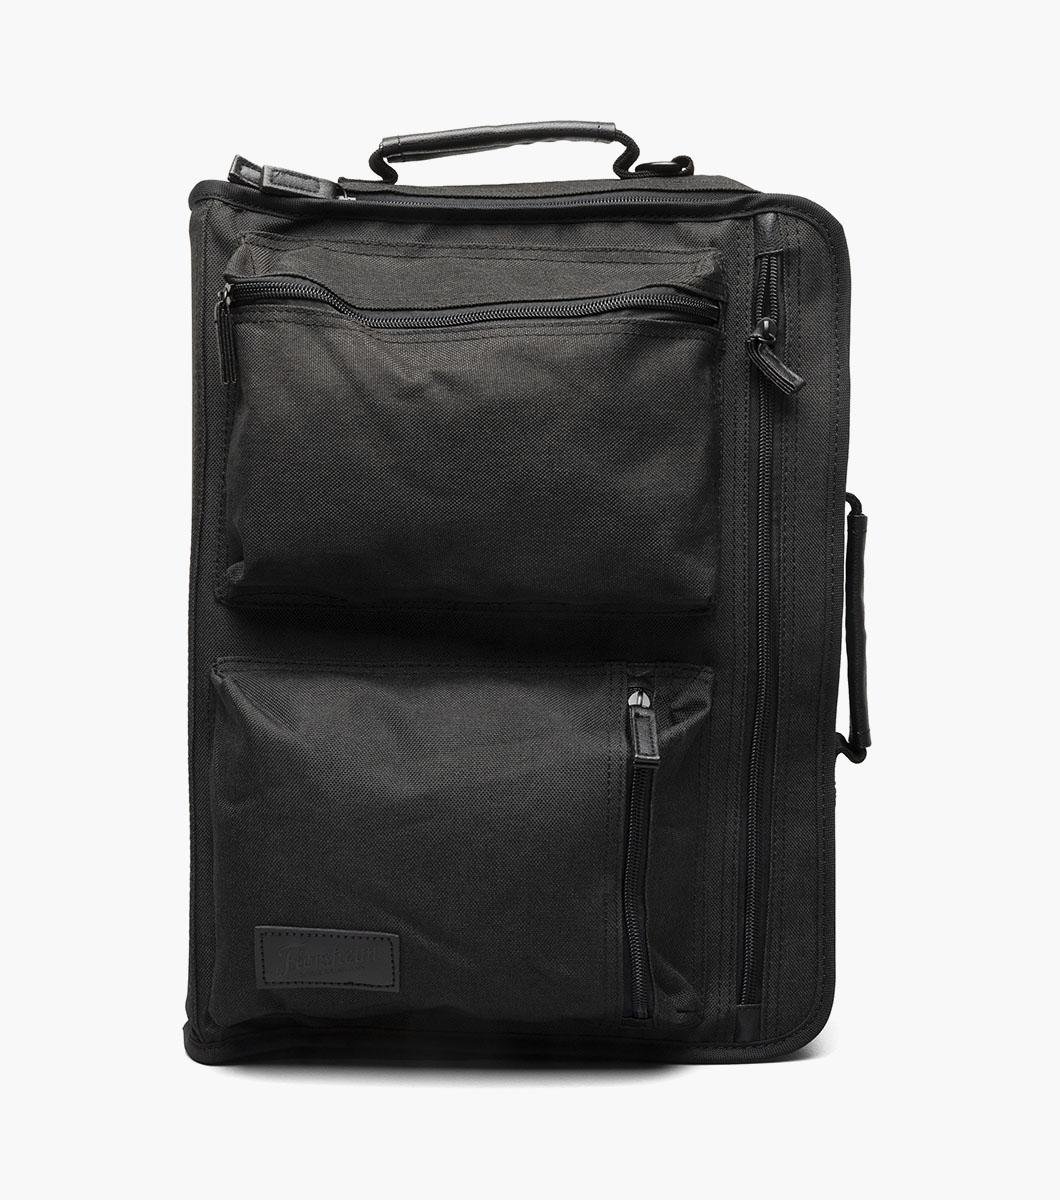 Asher Hybrid Briefcase Backpack Men’s Bags | Florsheim.com